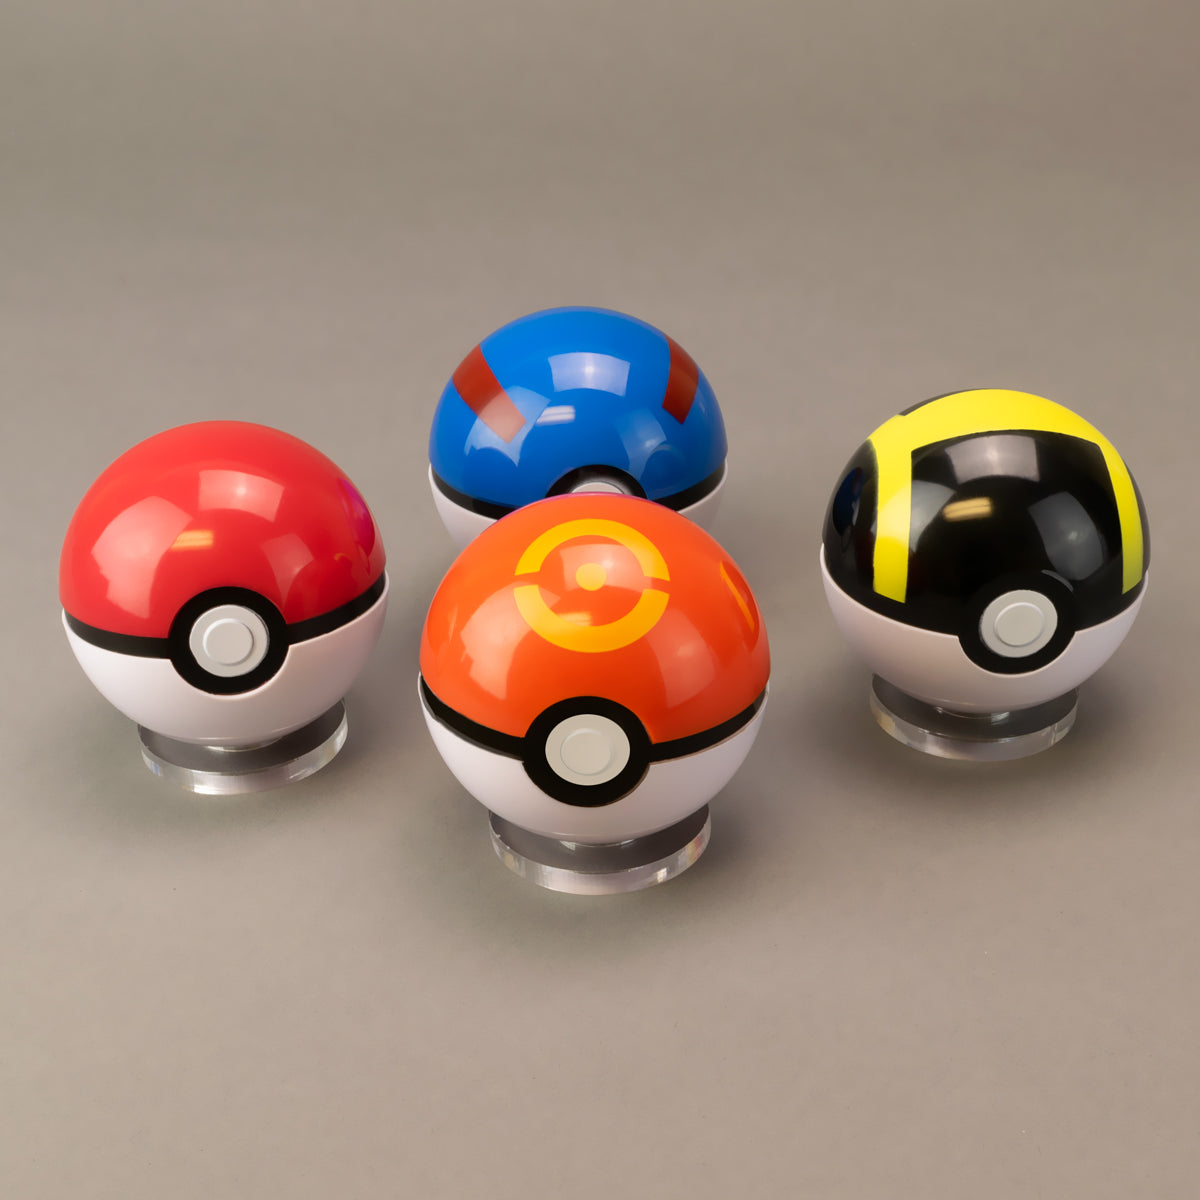 Sphere Pokeball  Pokeball, Pokemon, Pokemon ball